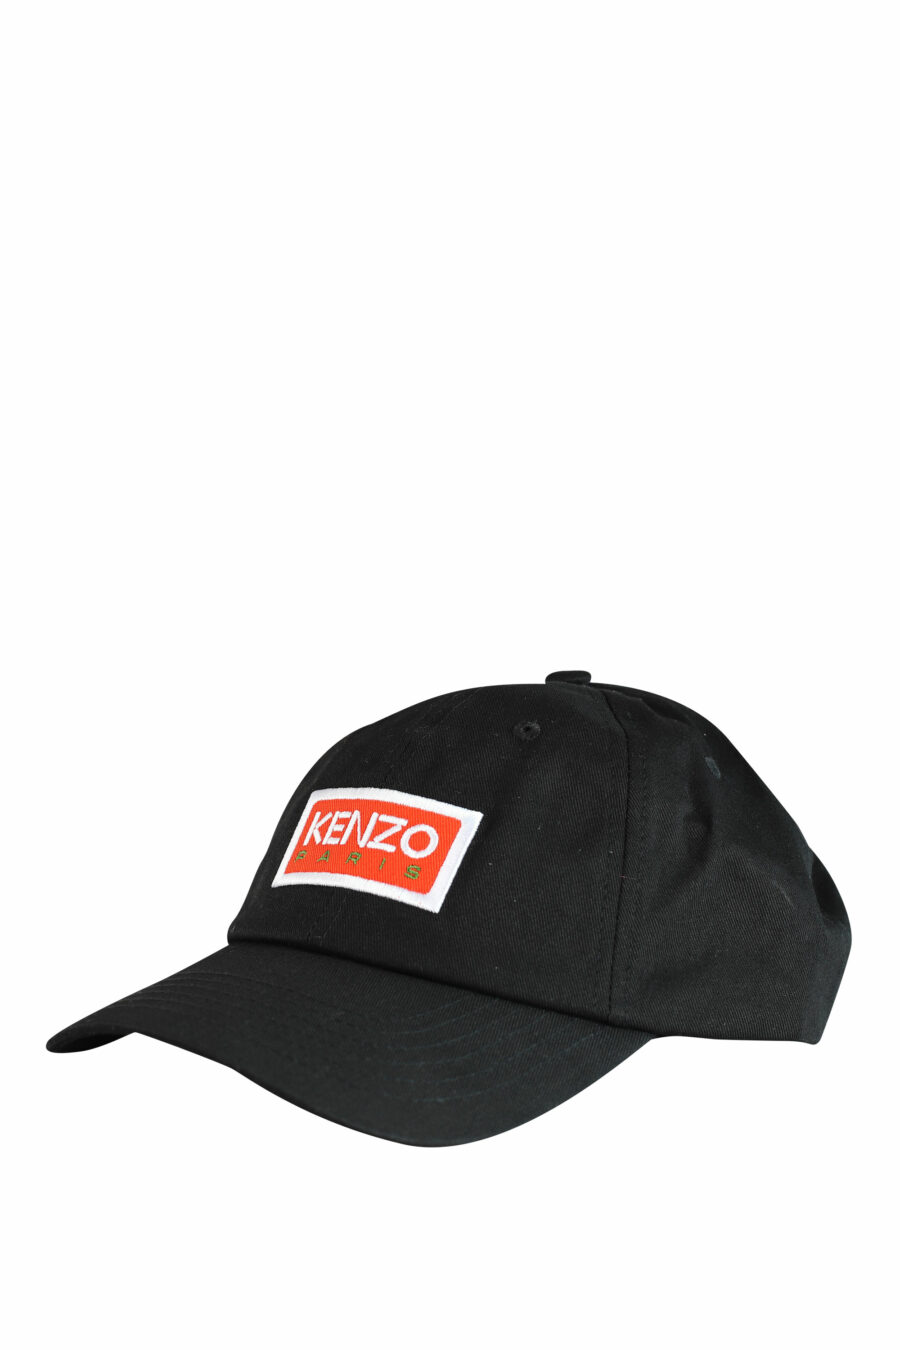 Black cap with "paris" logo - IMG 1051